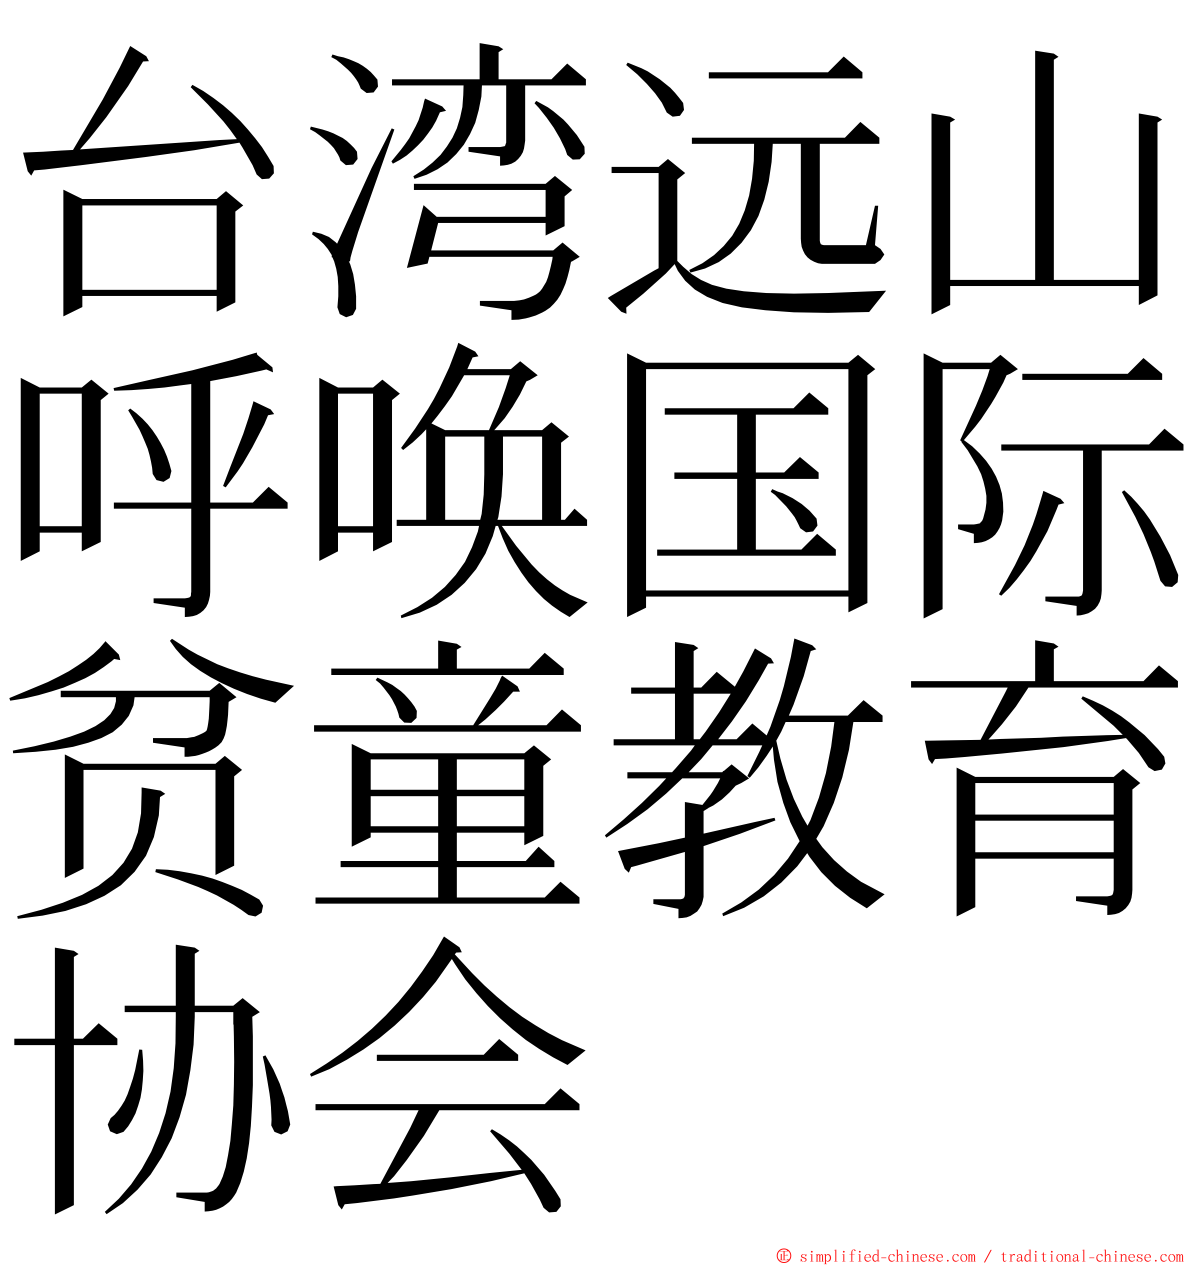 台湾远山呼唤国际贫童教育协会 ming font